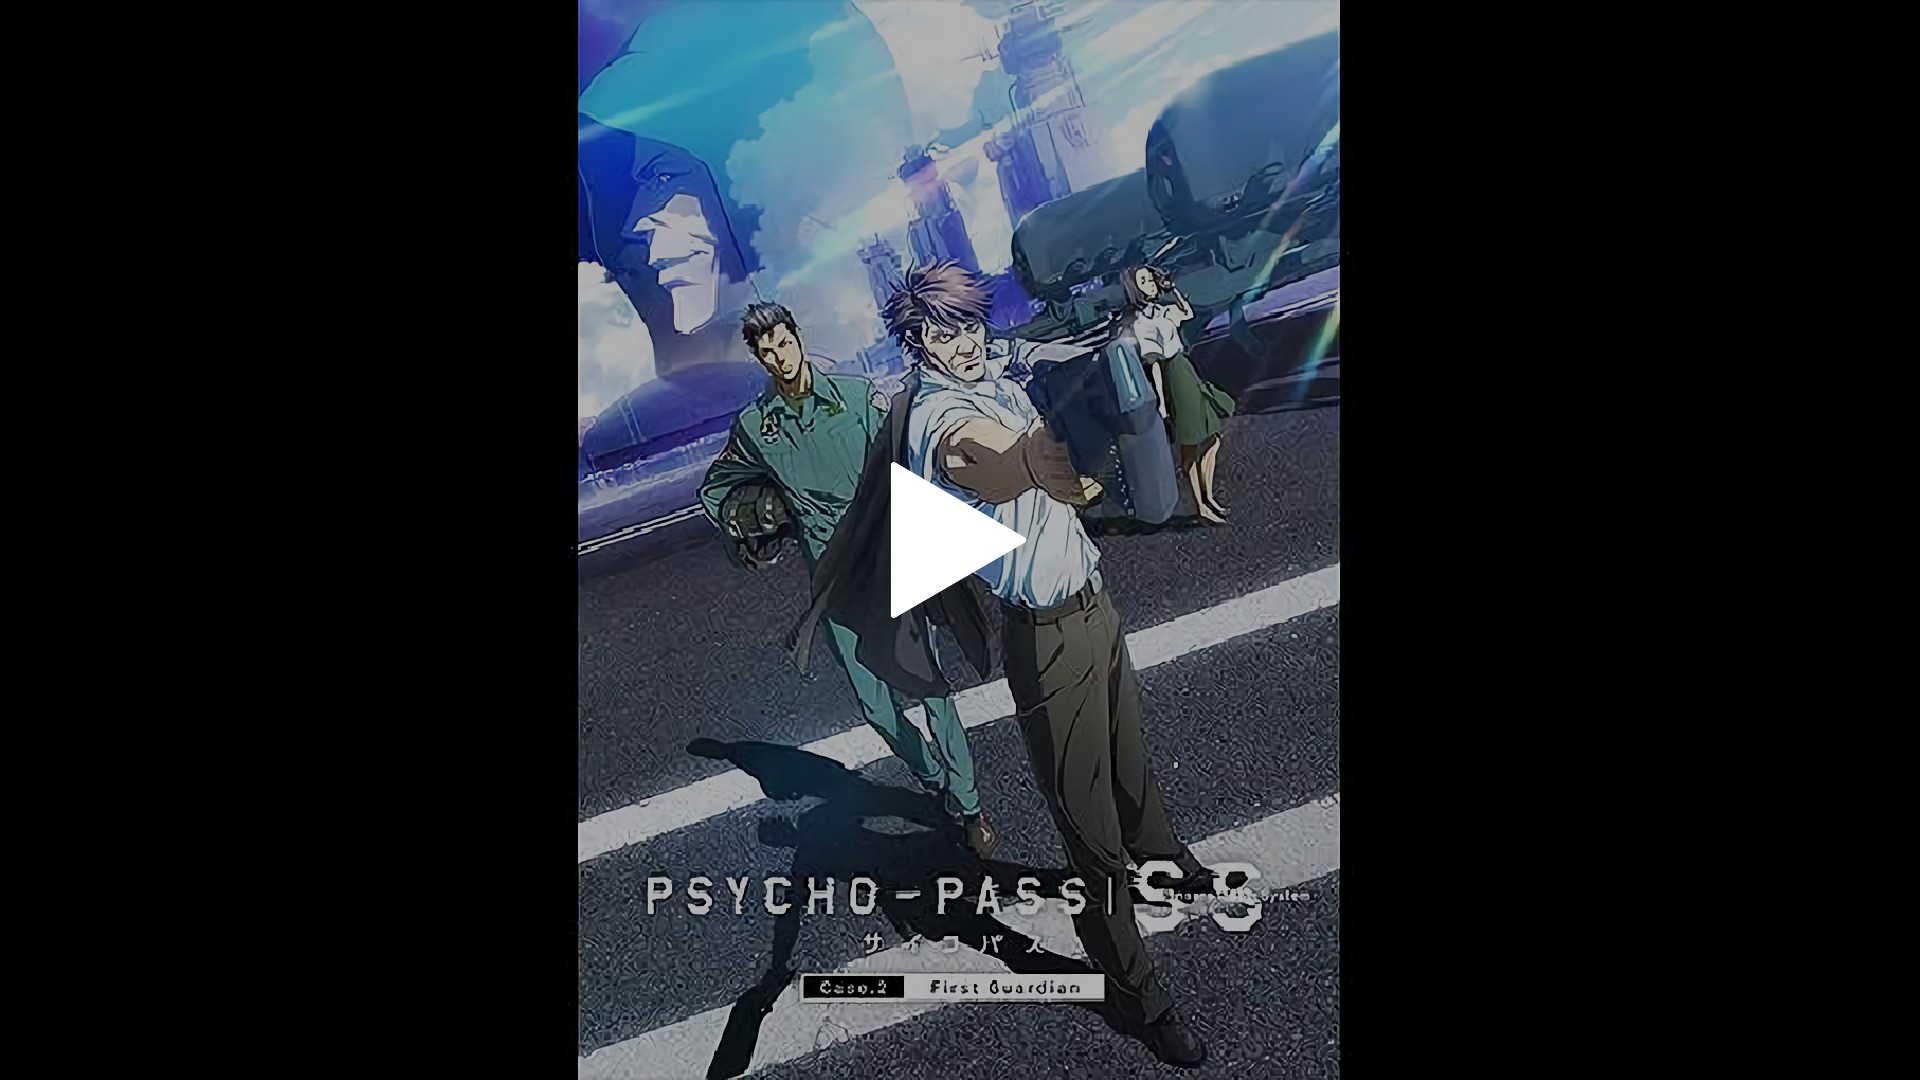 Psycho Pass サイコパス Sinners Of The System Case 2 First Guardian フジテレビの人気ドラマ アニメ Tv番組の動画が見放題 Fod